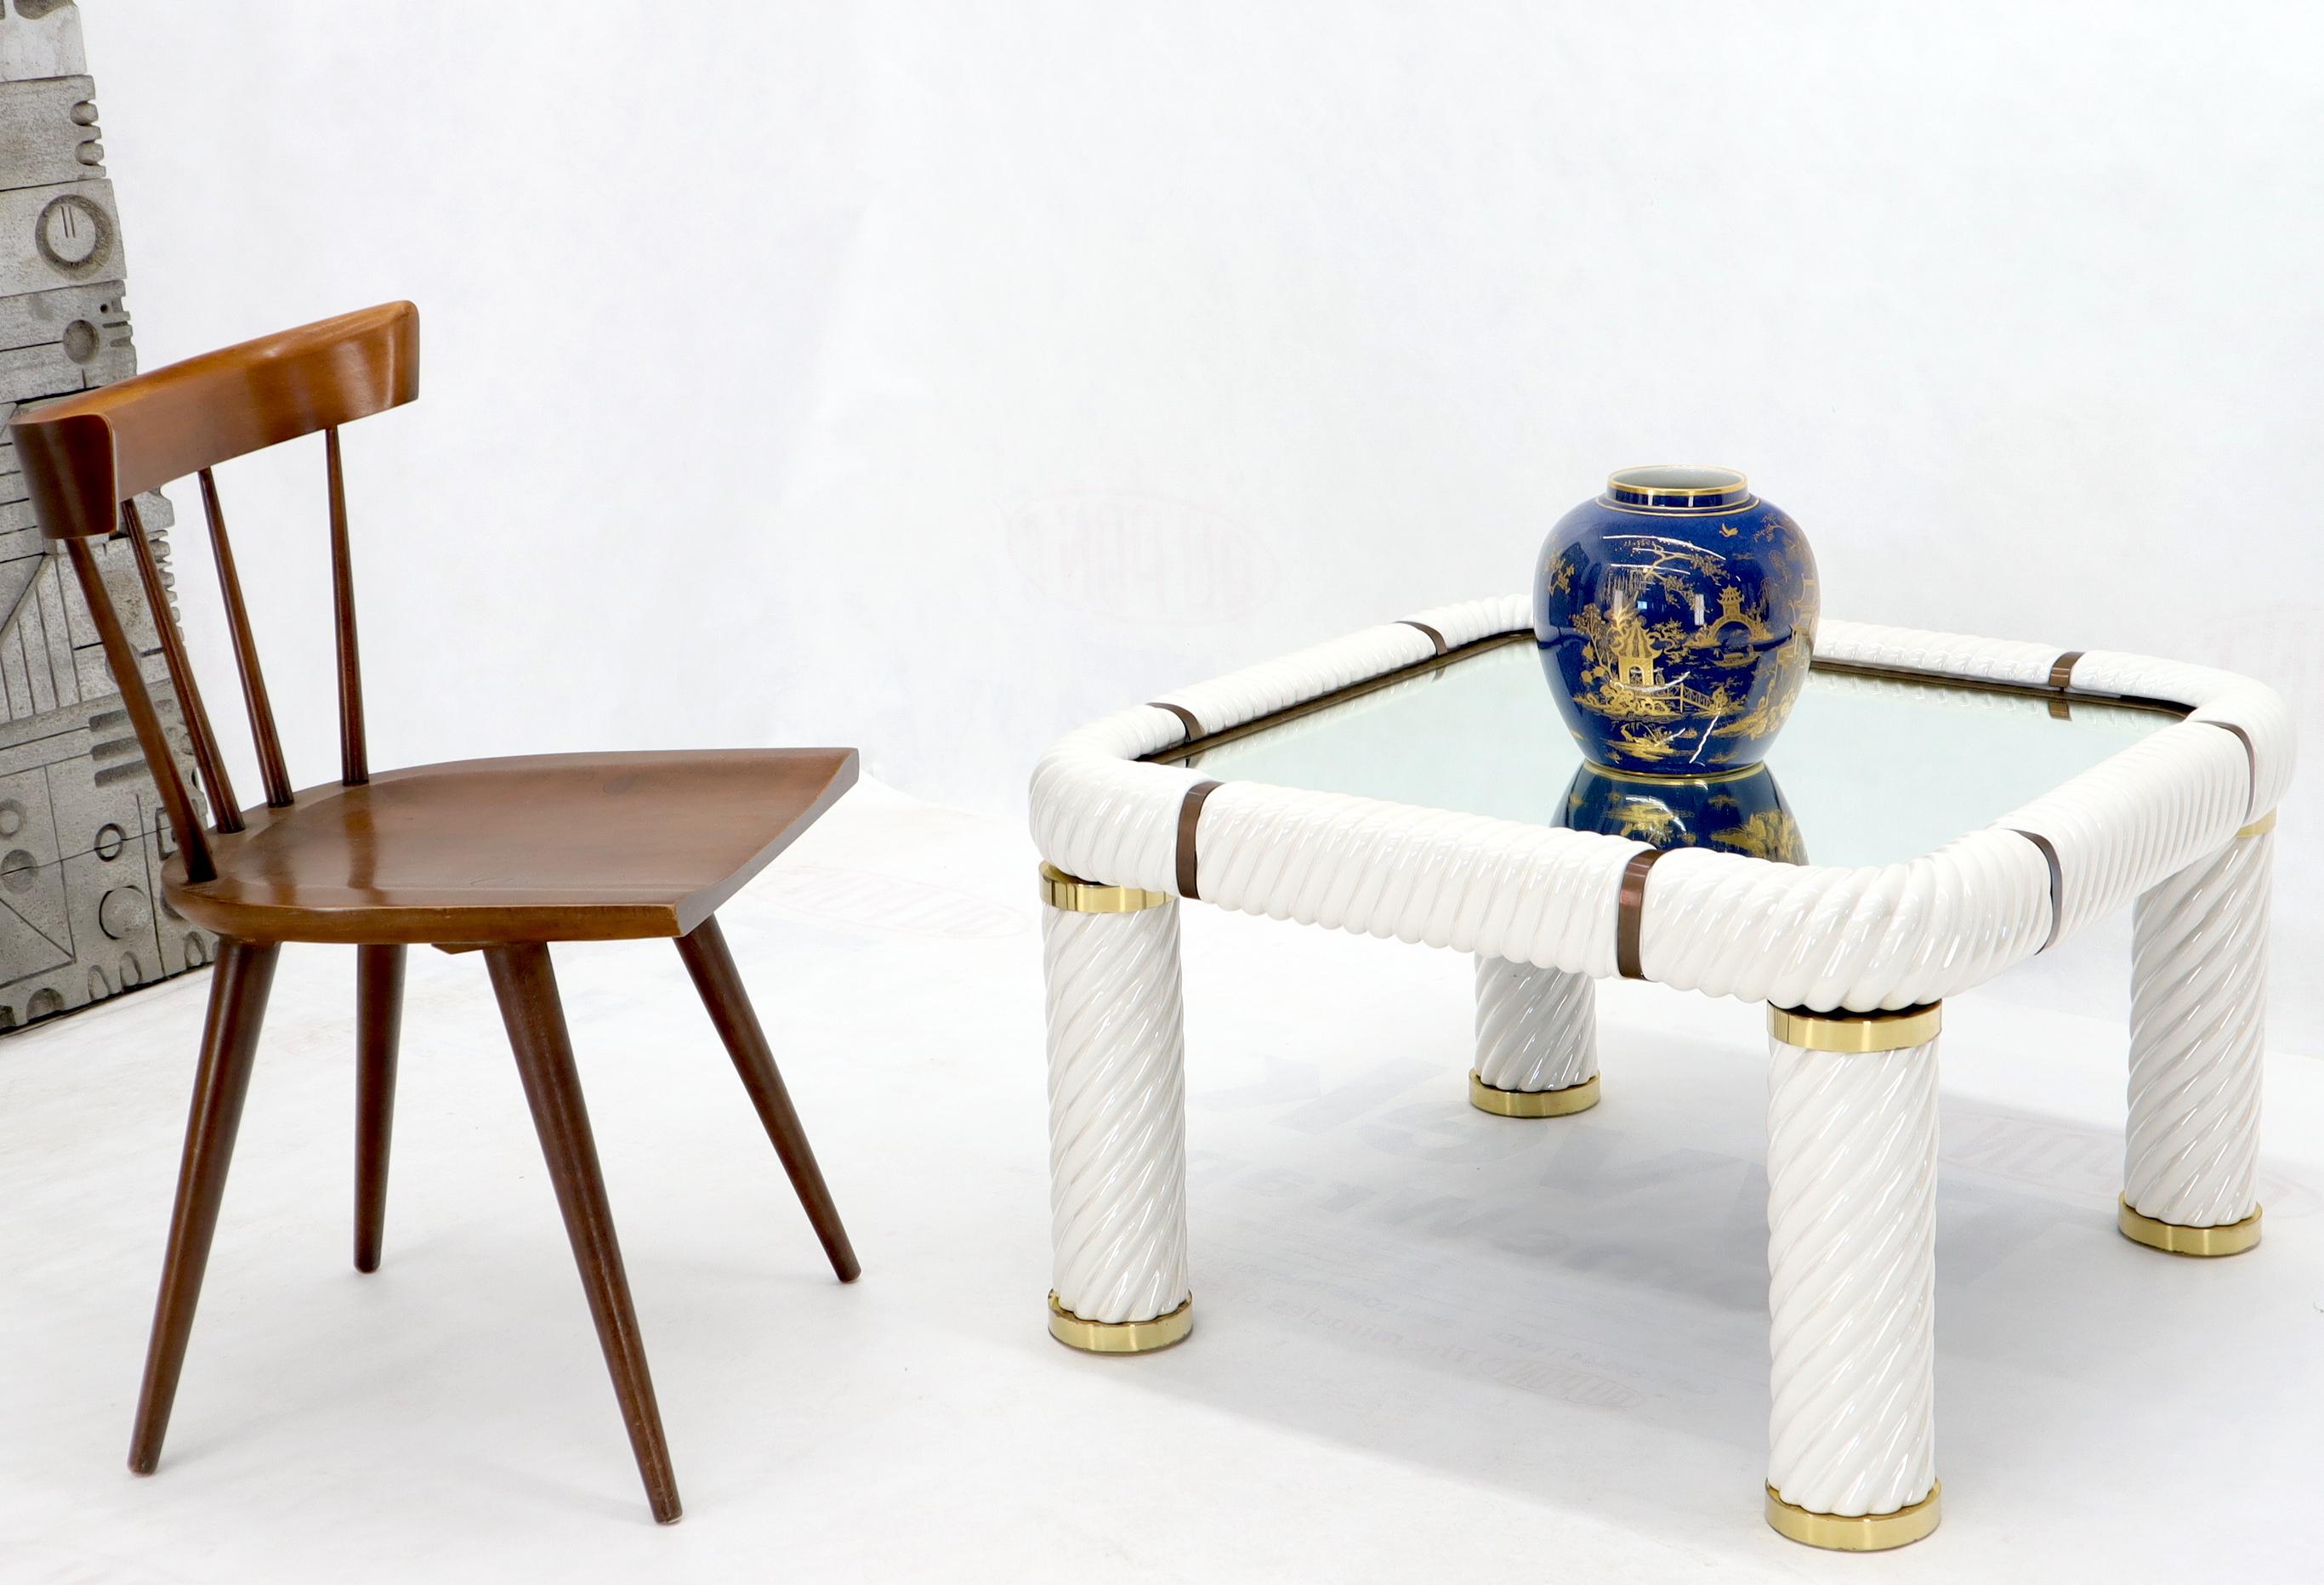 Table basse d'appoint en porcelaine et laiton, avec miroir, fabriquée en Italie et conçue par Tommaso Barbi. base ou cadre en porcelaine blanche 